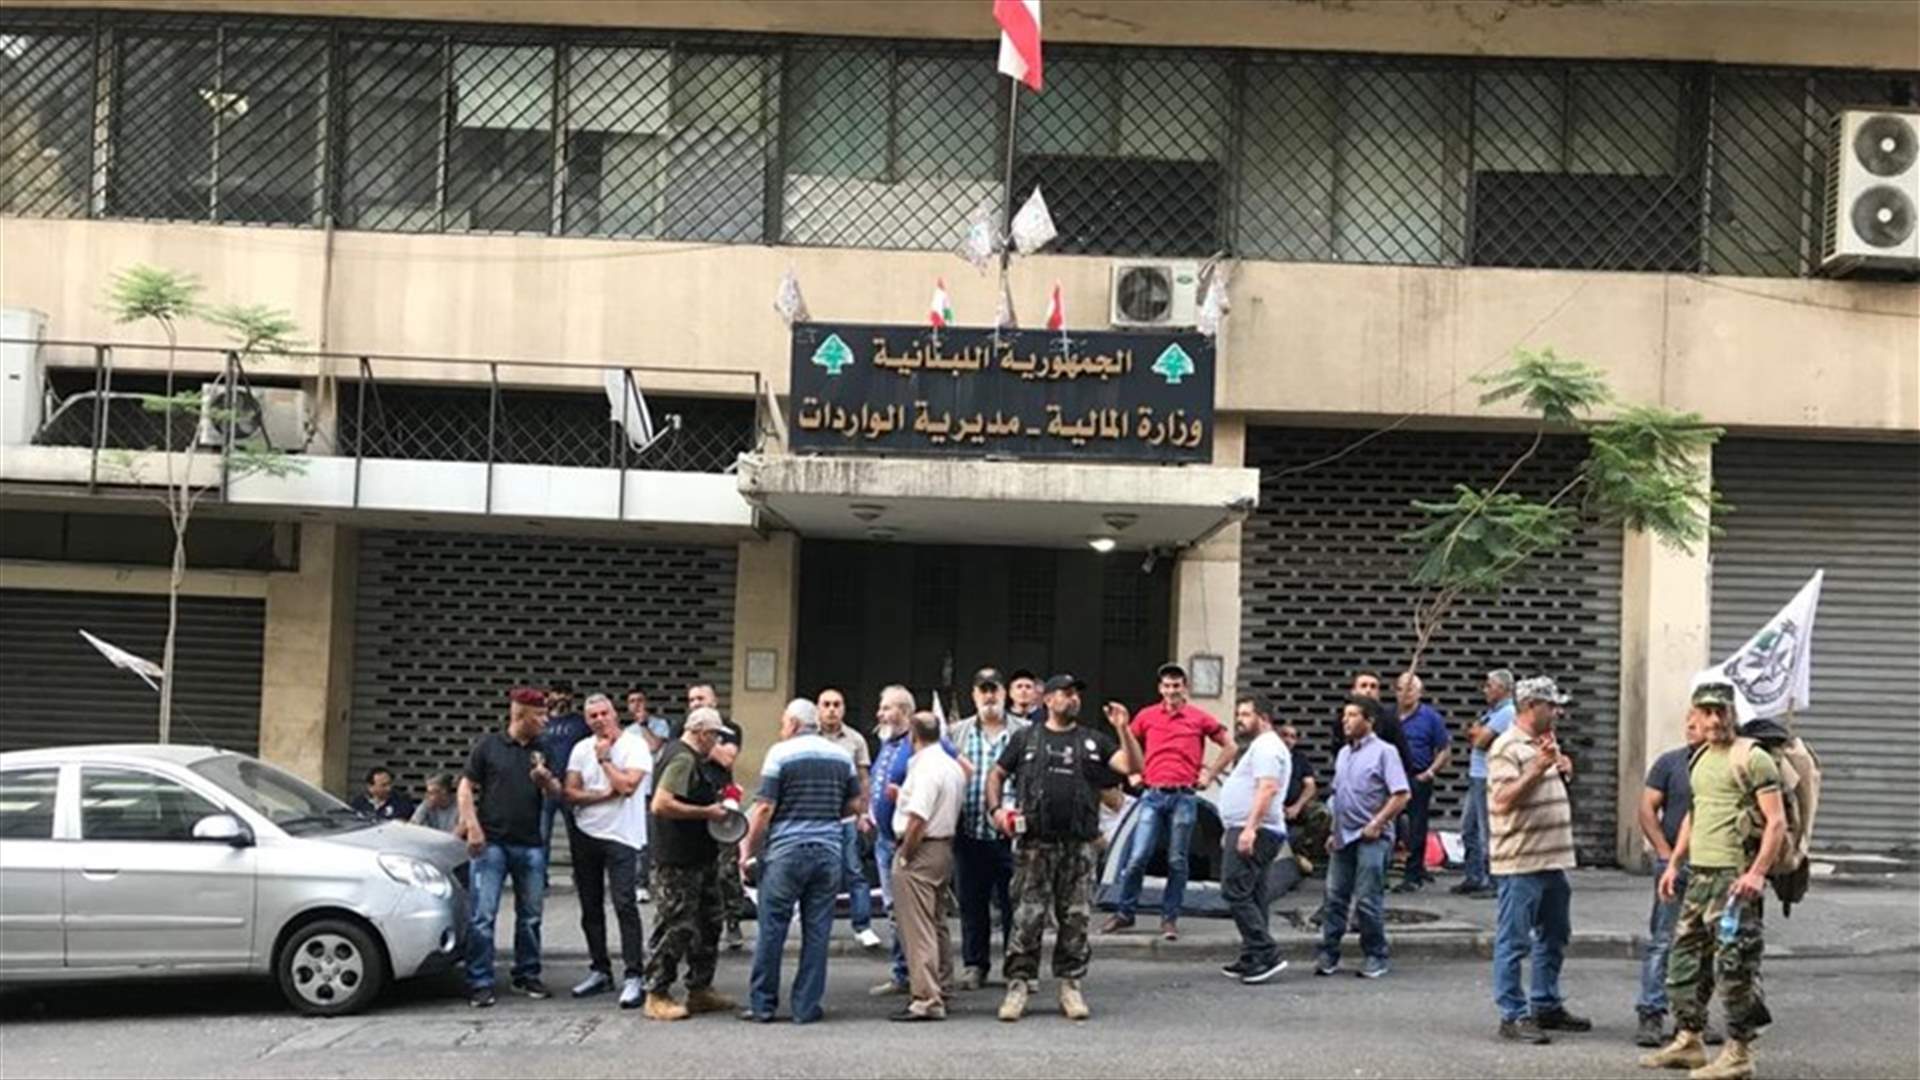 العسكريون المتقاعدون أقفلوا مدخل مبنى الواردات في شارع بشارة الخوري (صور)